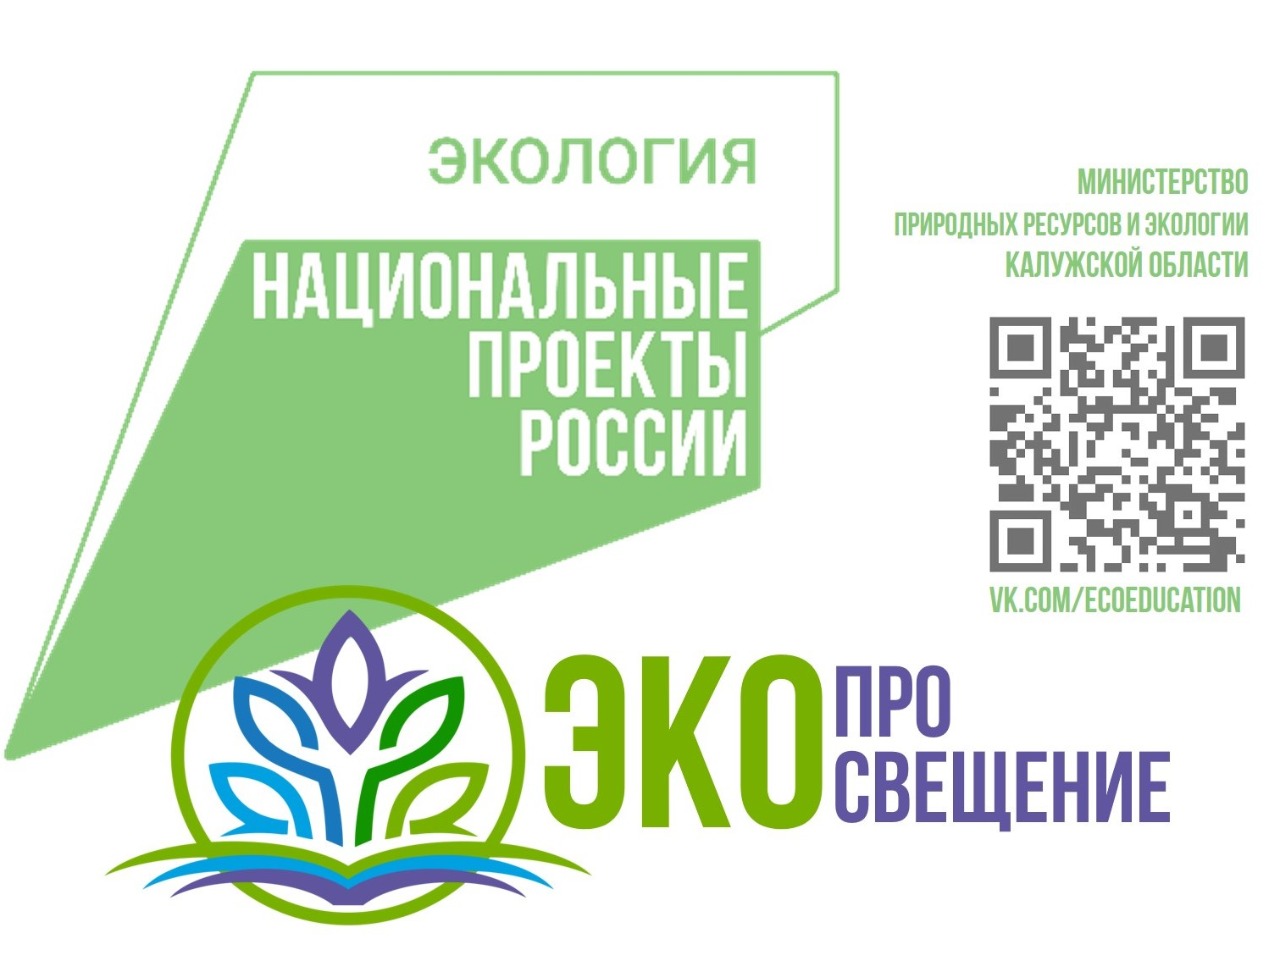 Онлайн-платформа «нацпроект «Экология» для детей» начала свою работу в Калужской области - фото 1